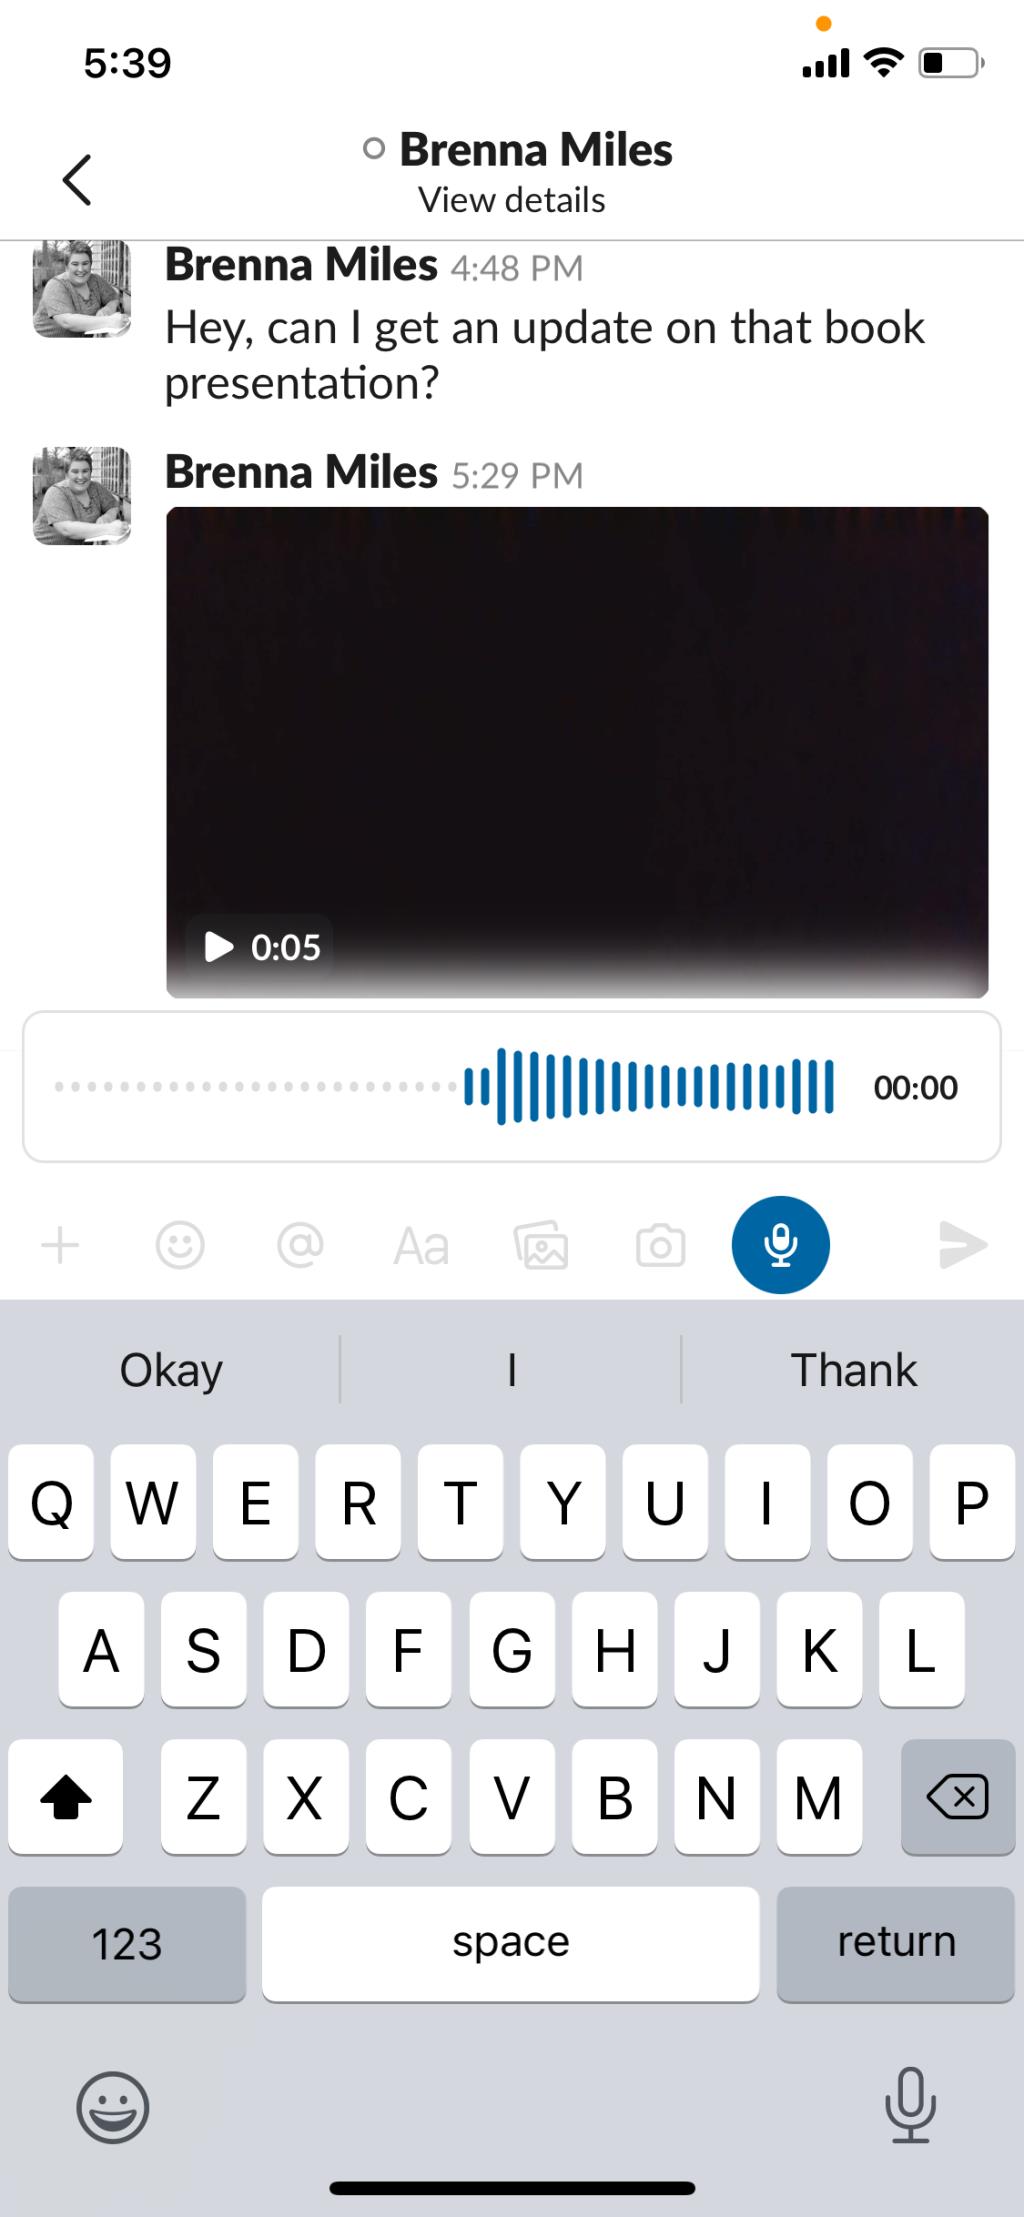 Cách sử dụng Slack Clips để giao tiếp nhanh chóng và dễ dàng với đồng nghiệp